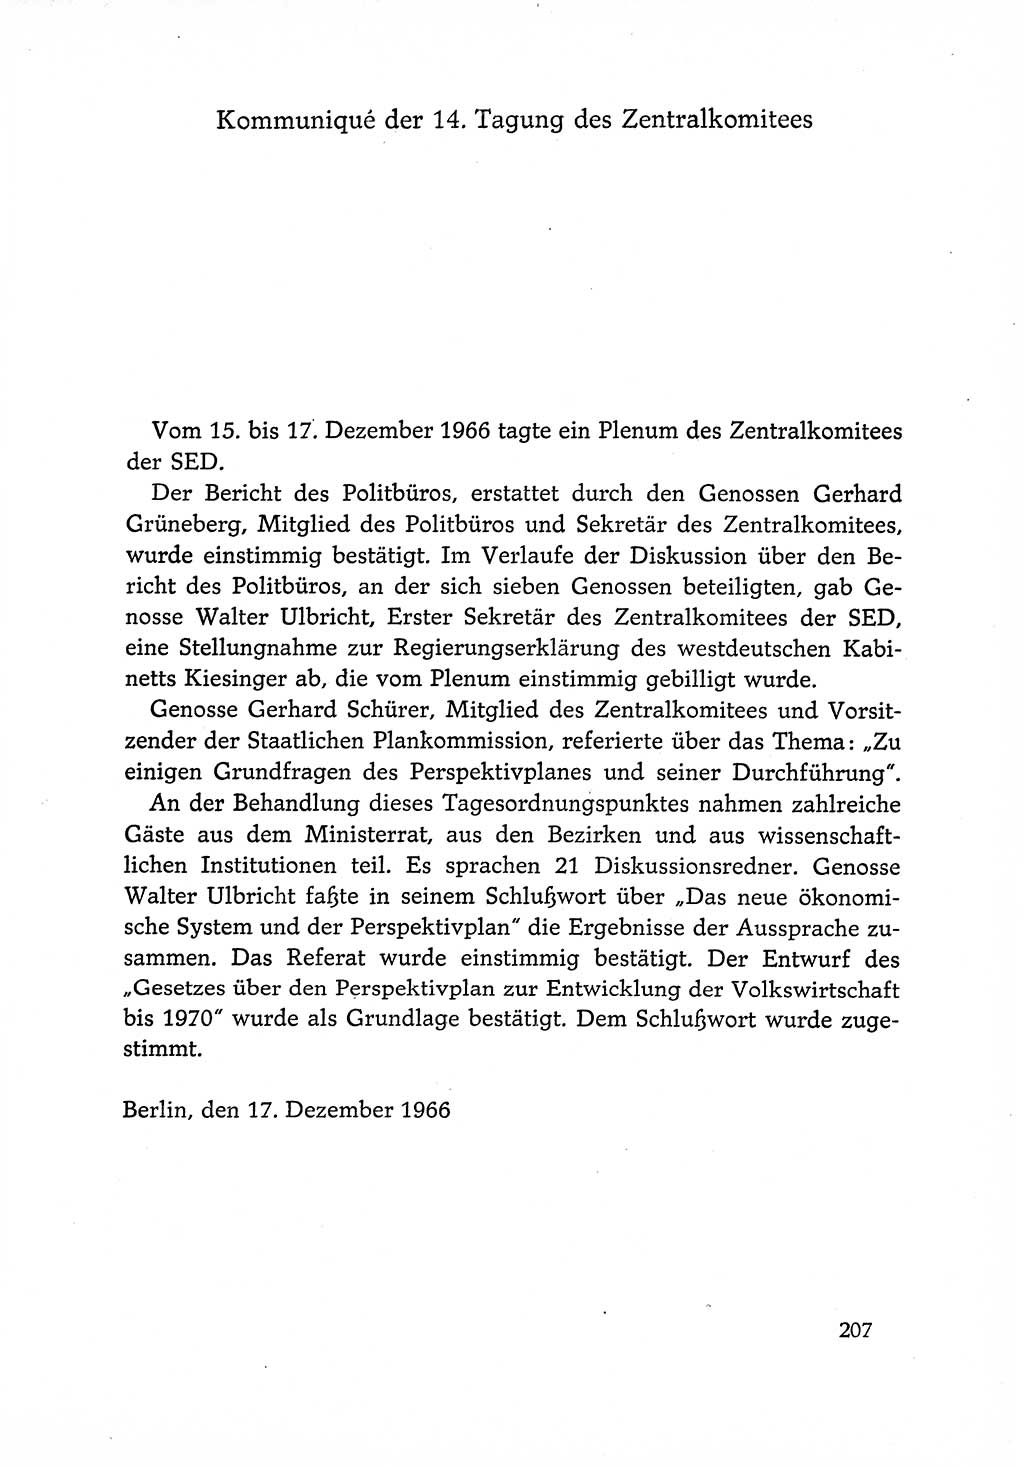 Dokumente der Sozialistischen Einheitspartei Deutschlands (SED) [Deutsche Demokratische Republik (DDR)] 1966-1967, Seite 207 (Dok. SED DDR 1966-1967, S. 207)